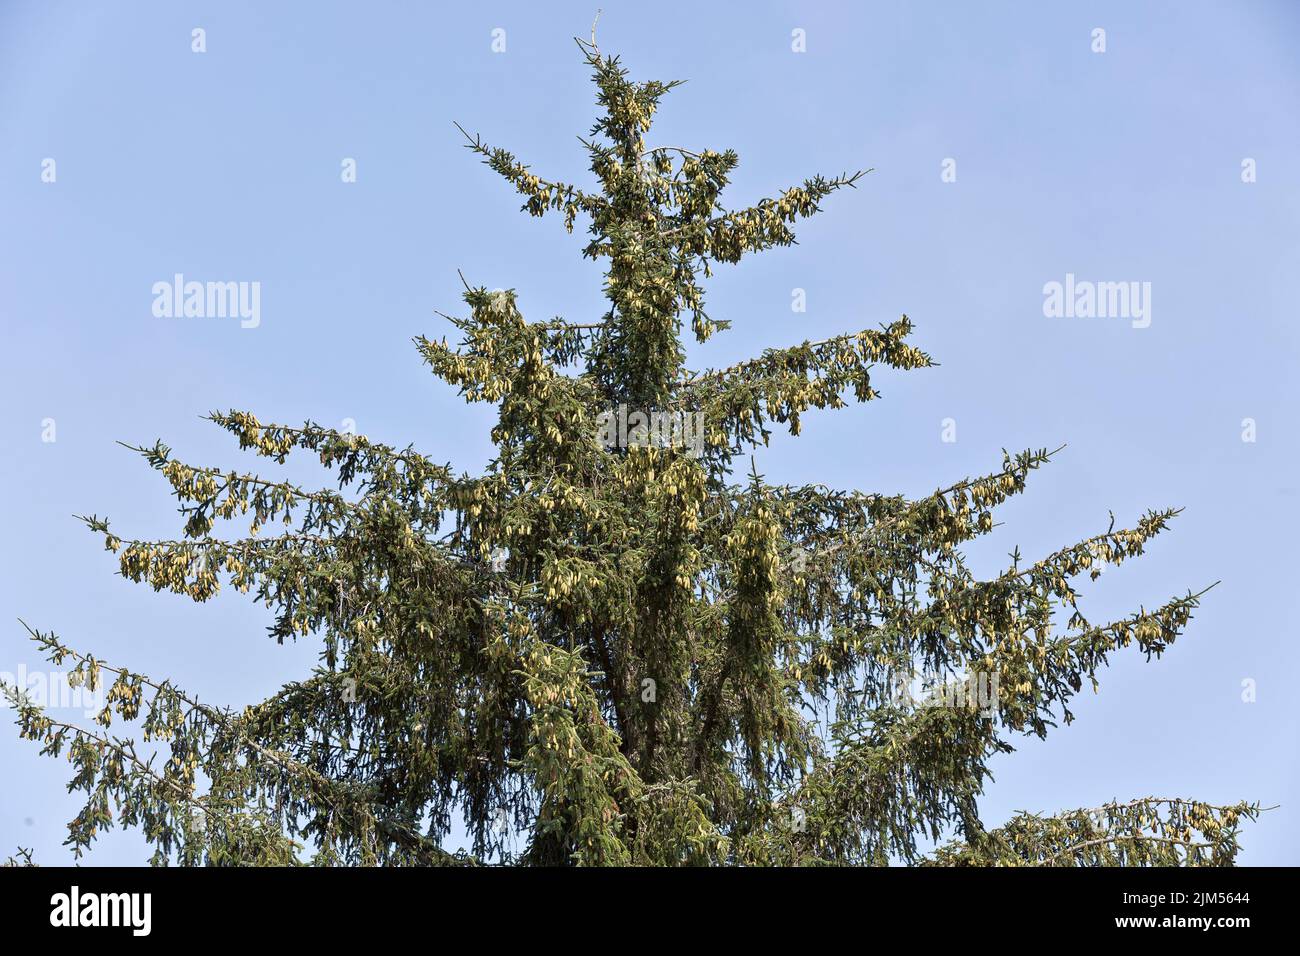 Épinette de Sitka 'Picea sitchensis', branches, cônes femelles et mâles en maturation, conifères, arbre à feuilles persistantes. Banque D'Images